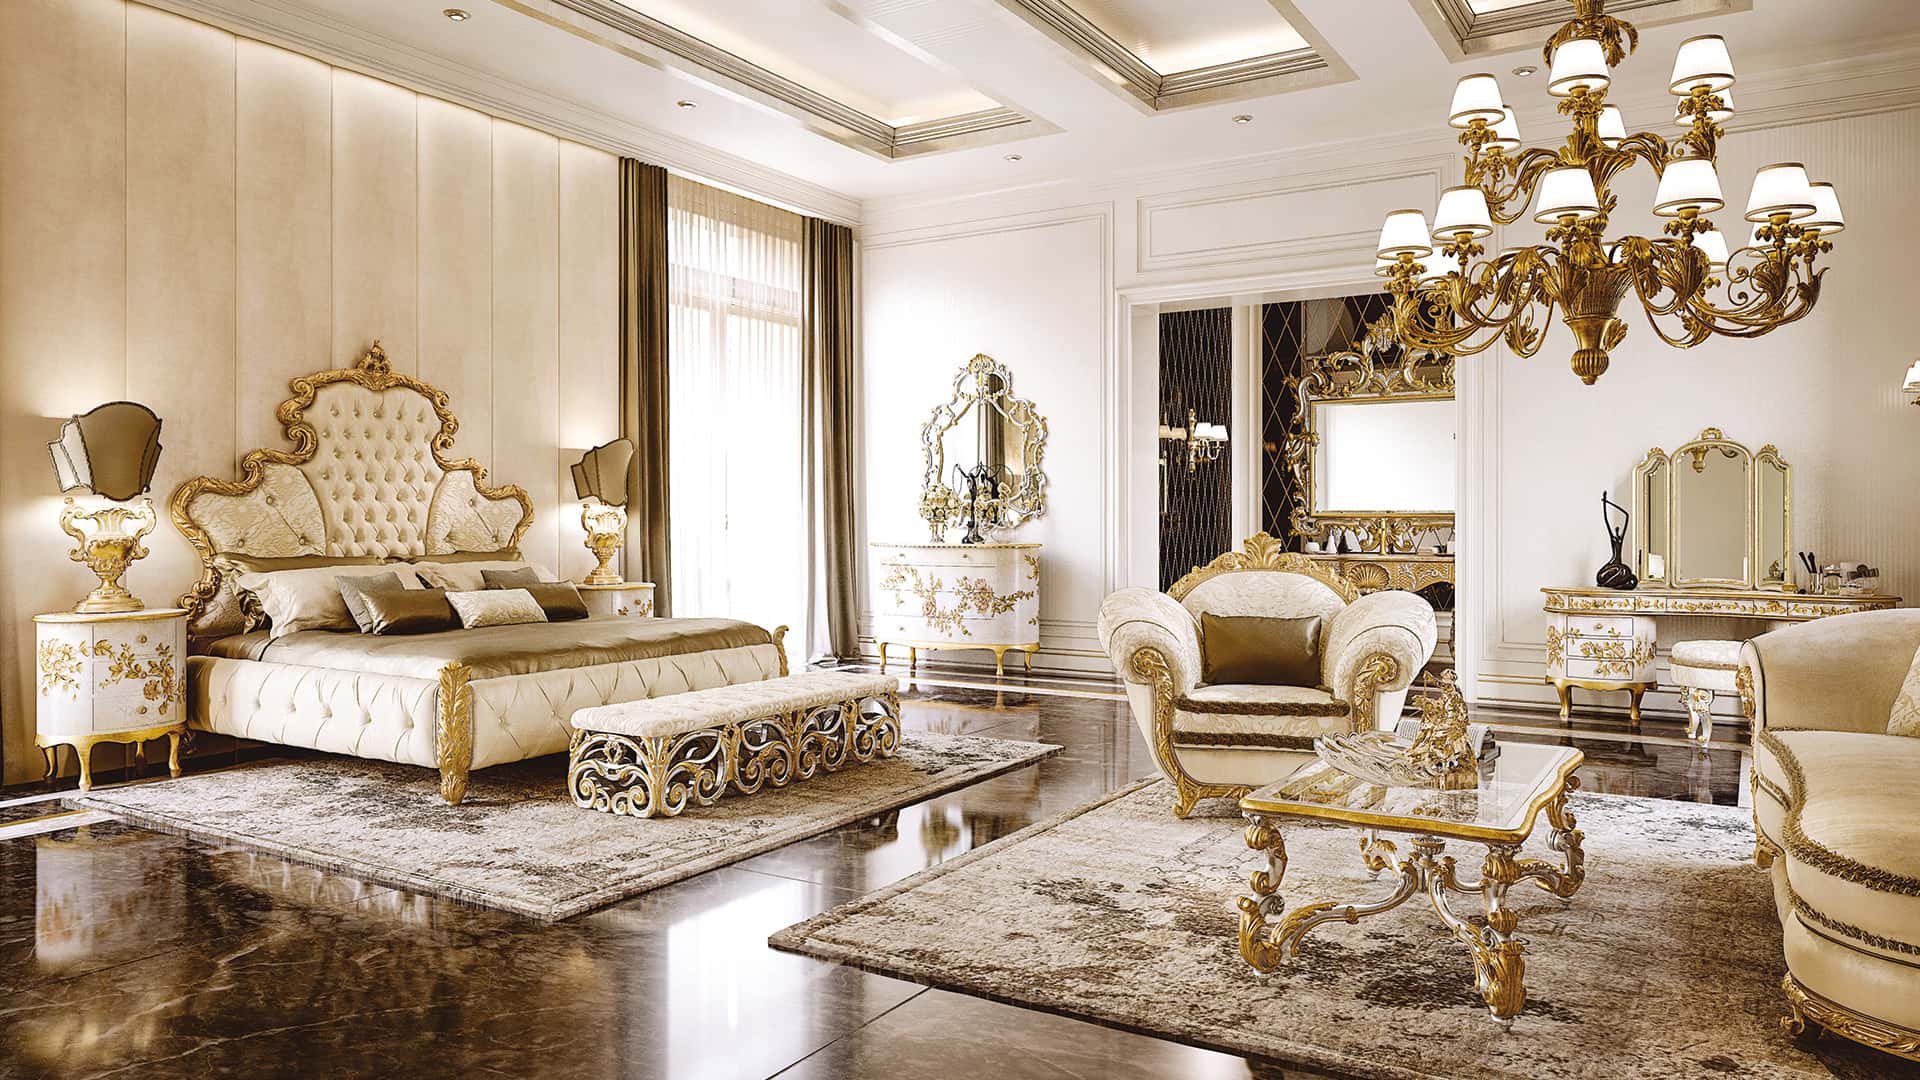 latest italian bedroom furniture